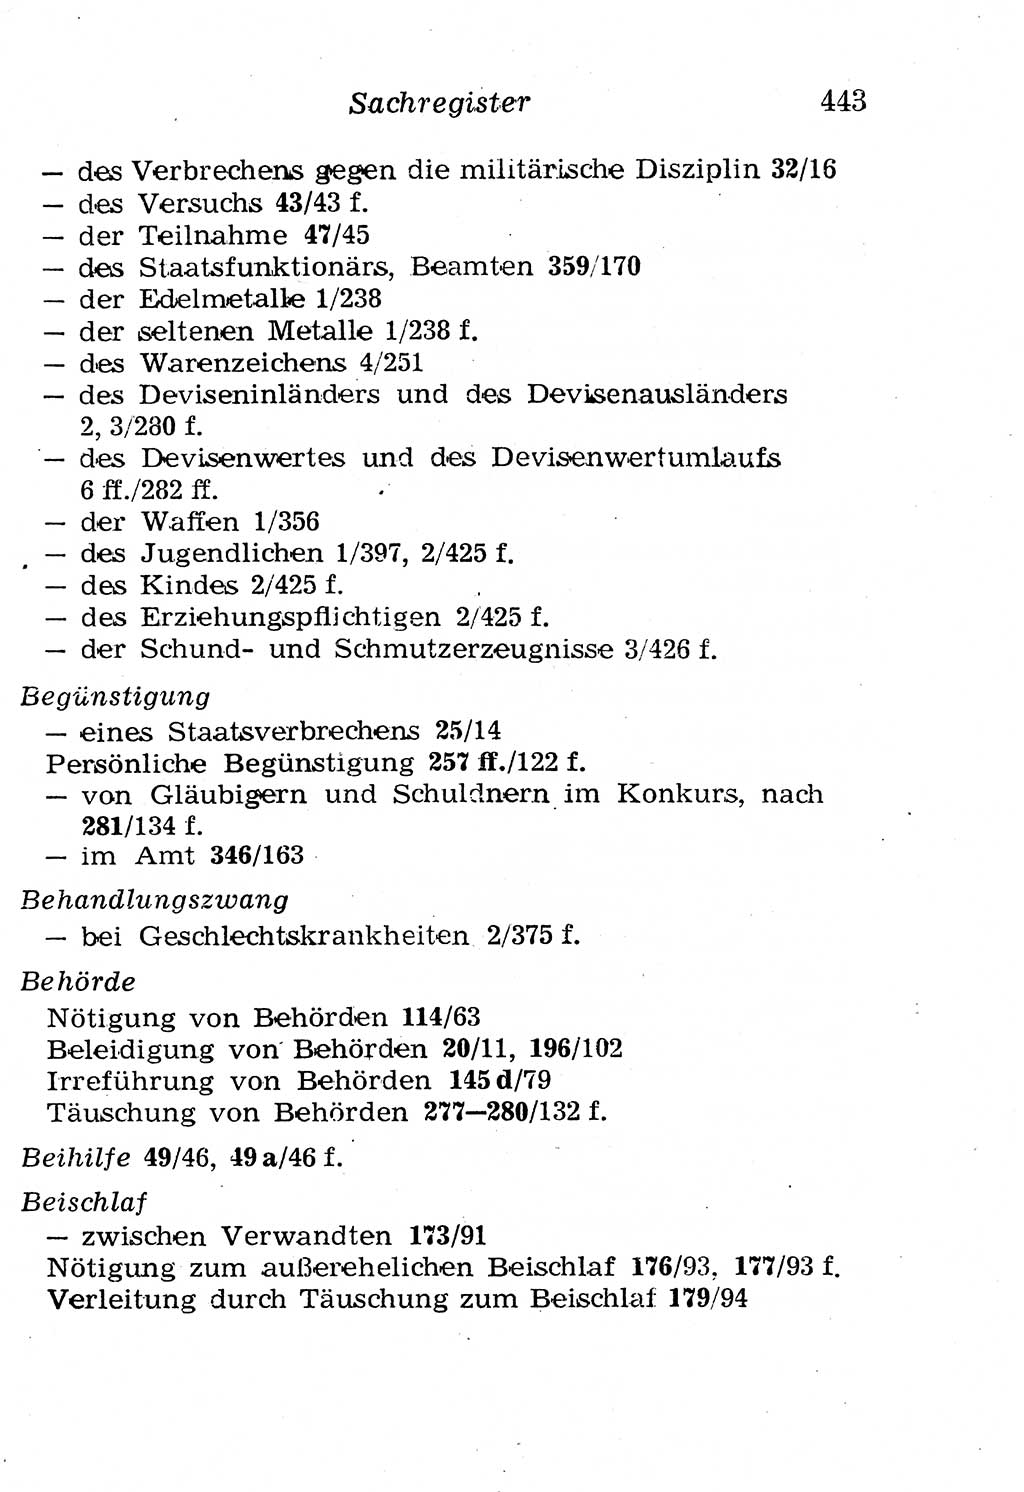 Strafgesetzbuch (StGB) und andere Strafgesetze [Deutsche Demokratische Republik (DDR)] 1958, Seite 443 (StGB Strafges. DDR 1958, S. 443)